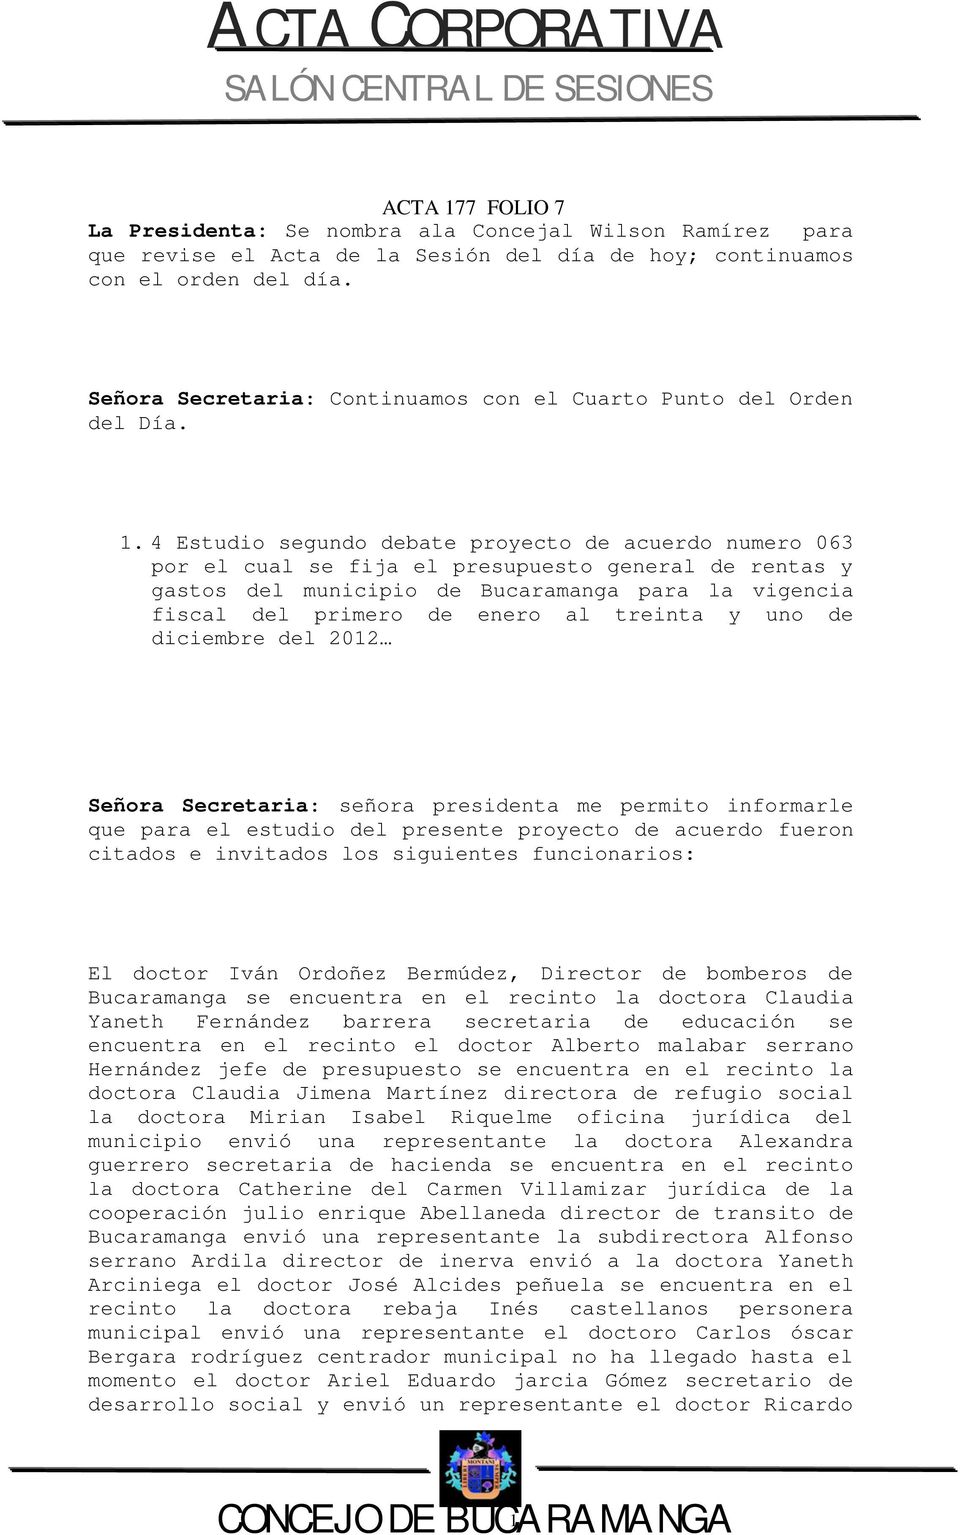 4 Estudio segundo debate proyecto de acuerdo numero 063 por el cual se fija el presupuesto general de rentas y gastos del municipio de Bucaramanga para la vigencia fiscal del primero de enero al